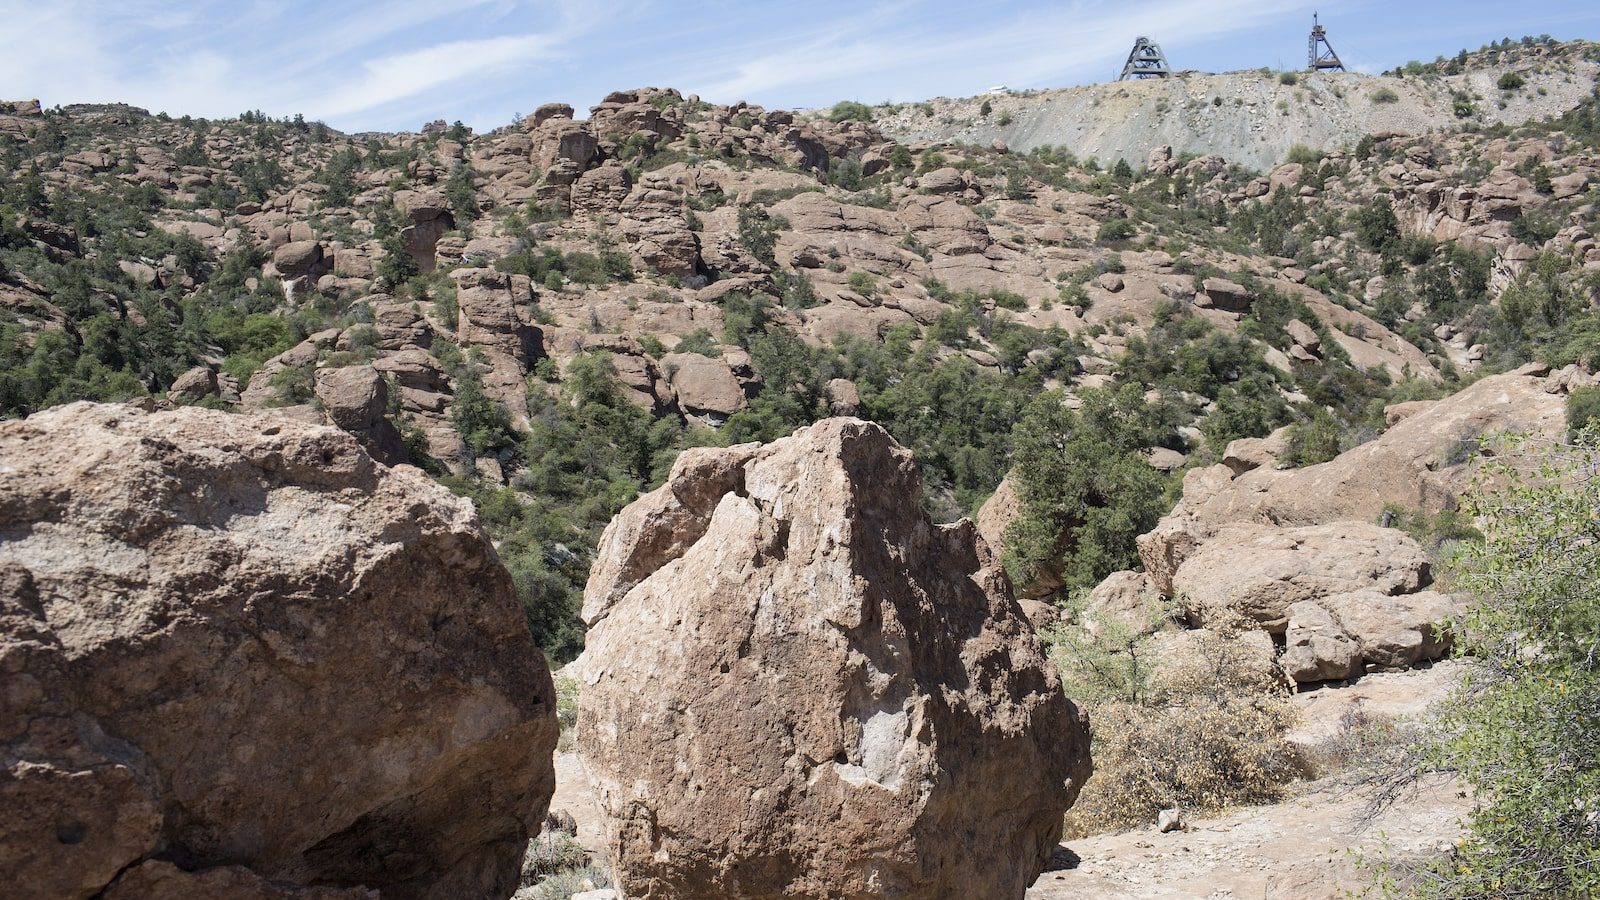 a large rock sits in a desert landscape near metal scaffolds